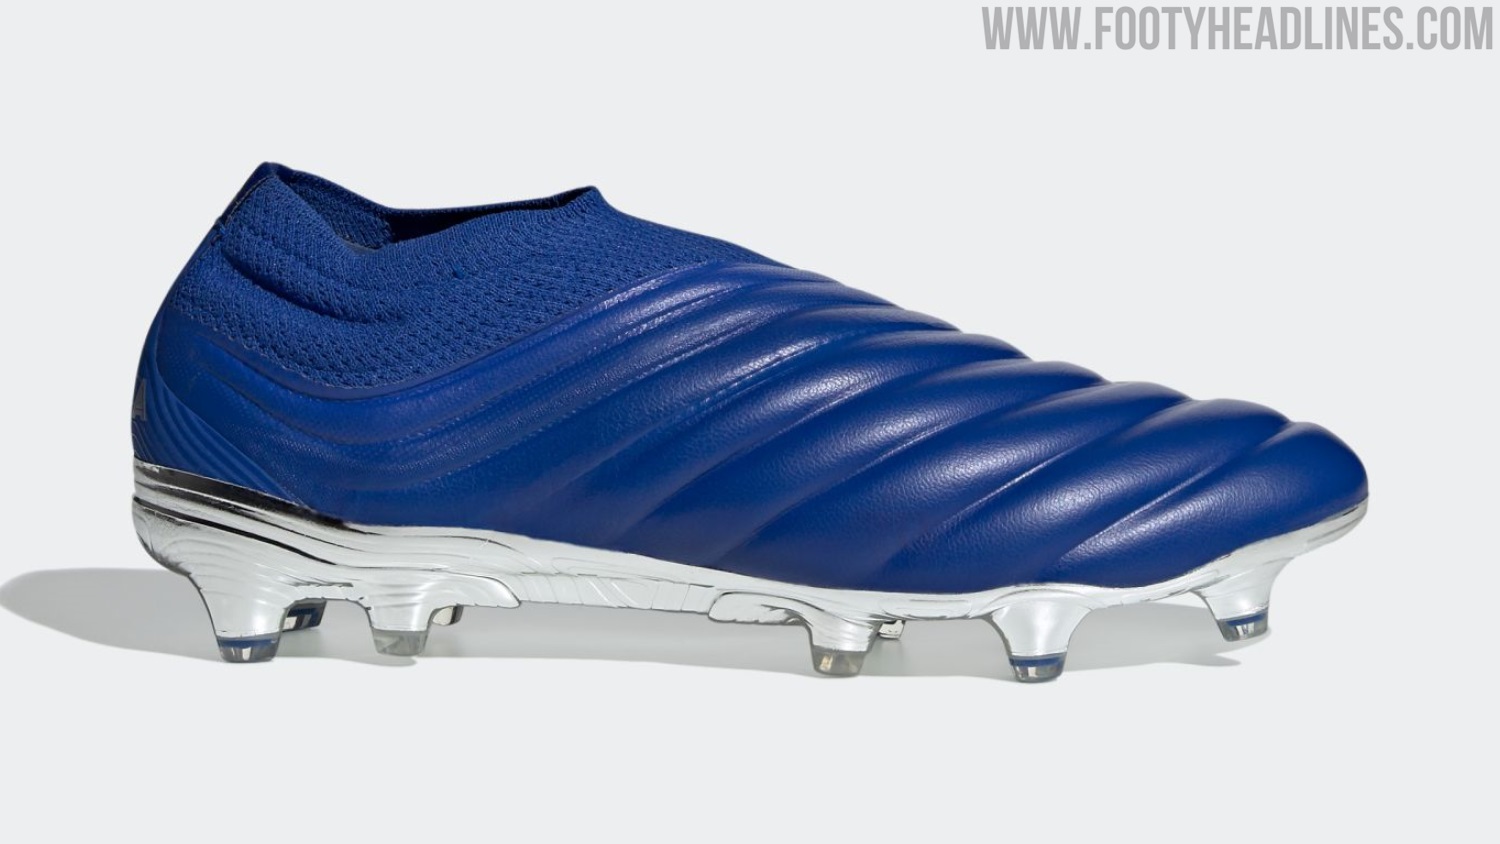 Giày đá banh da thật Adidas Copa Inflight pack với gam màu xanh dương đế bạc